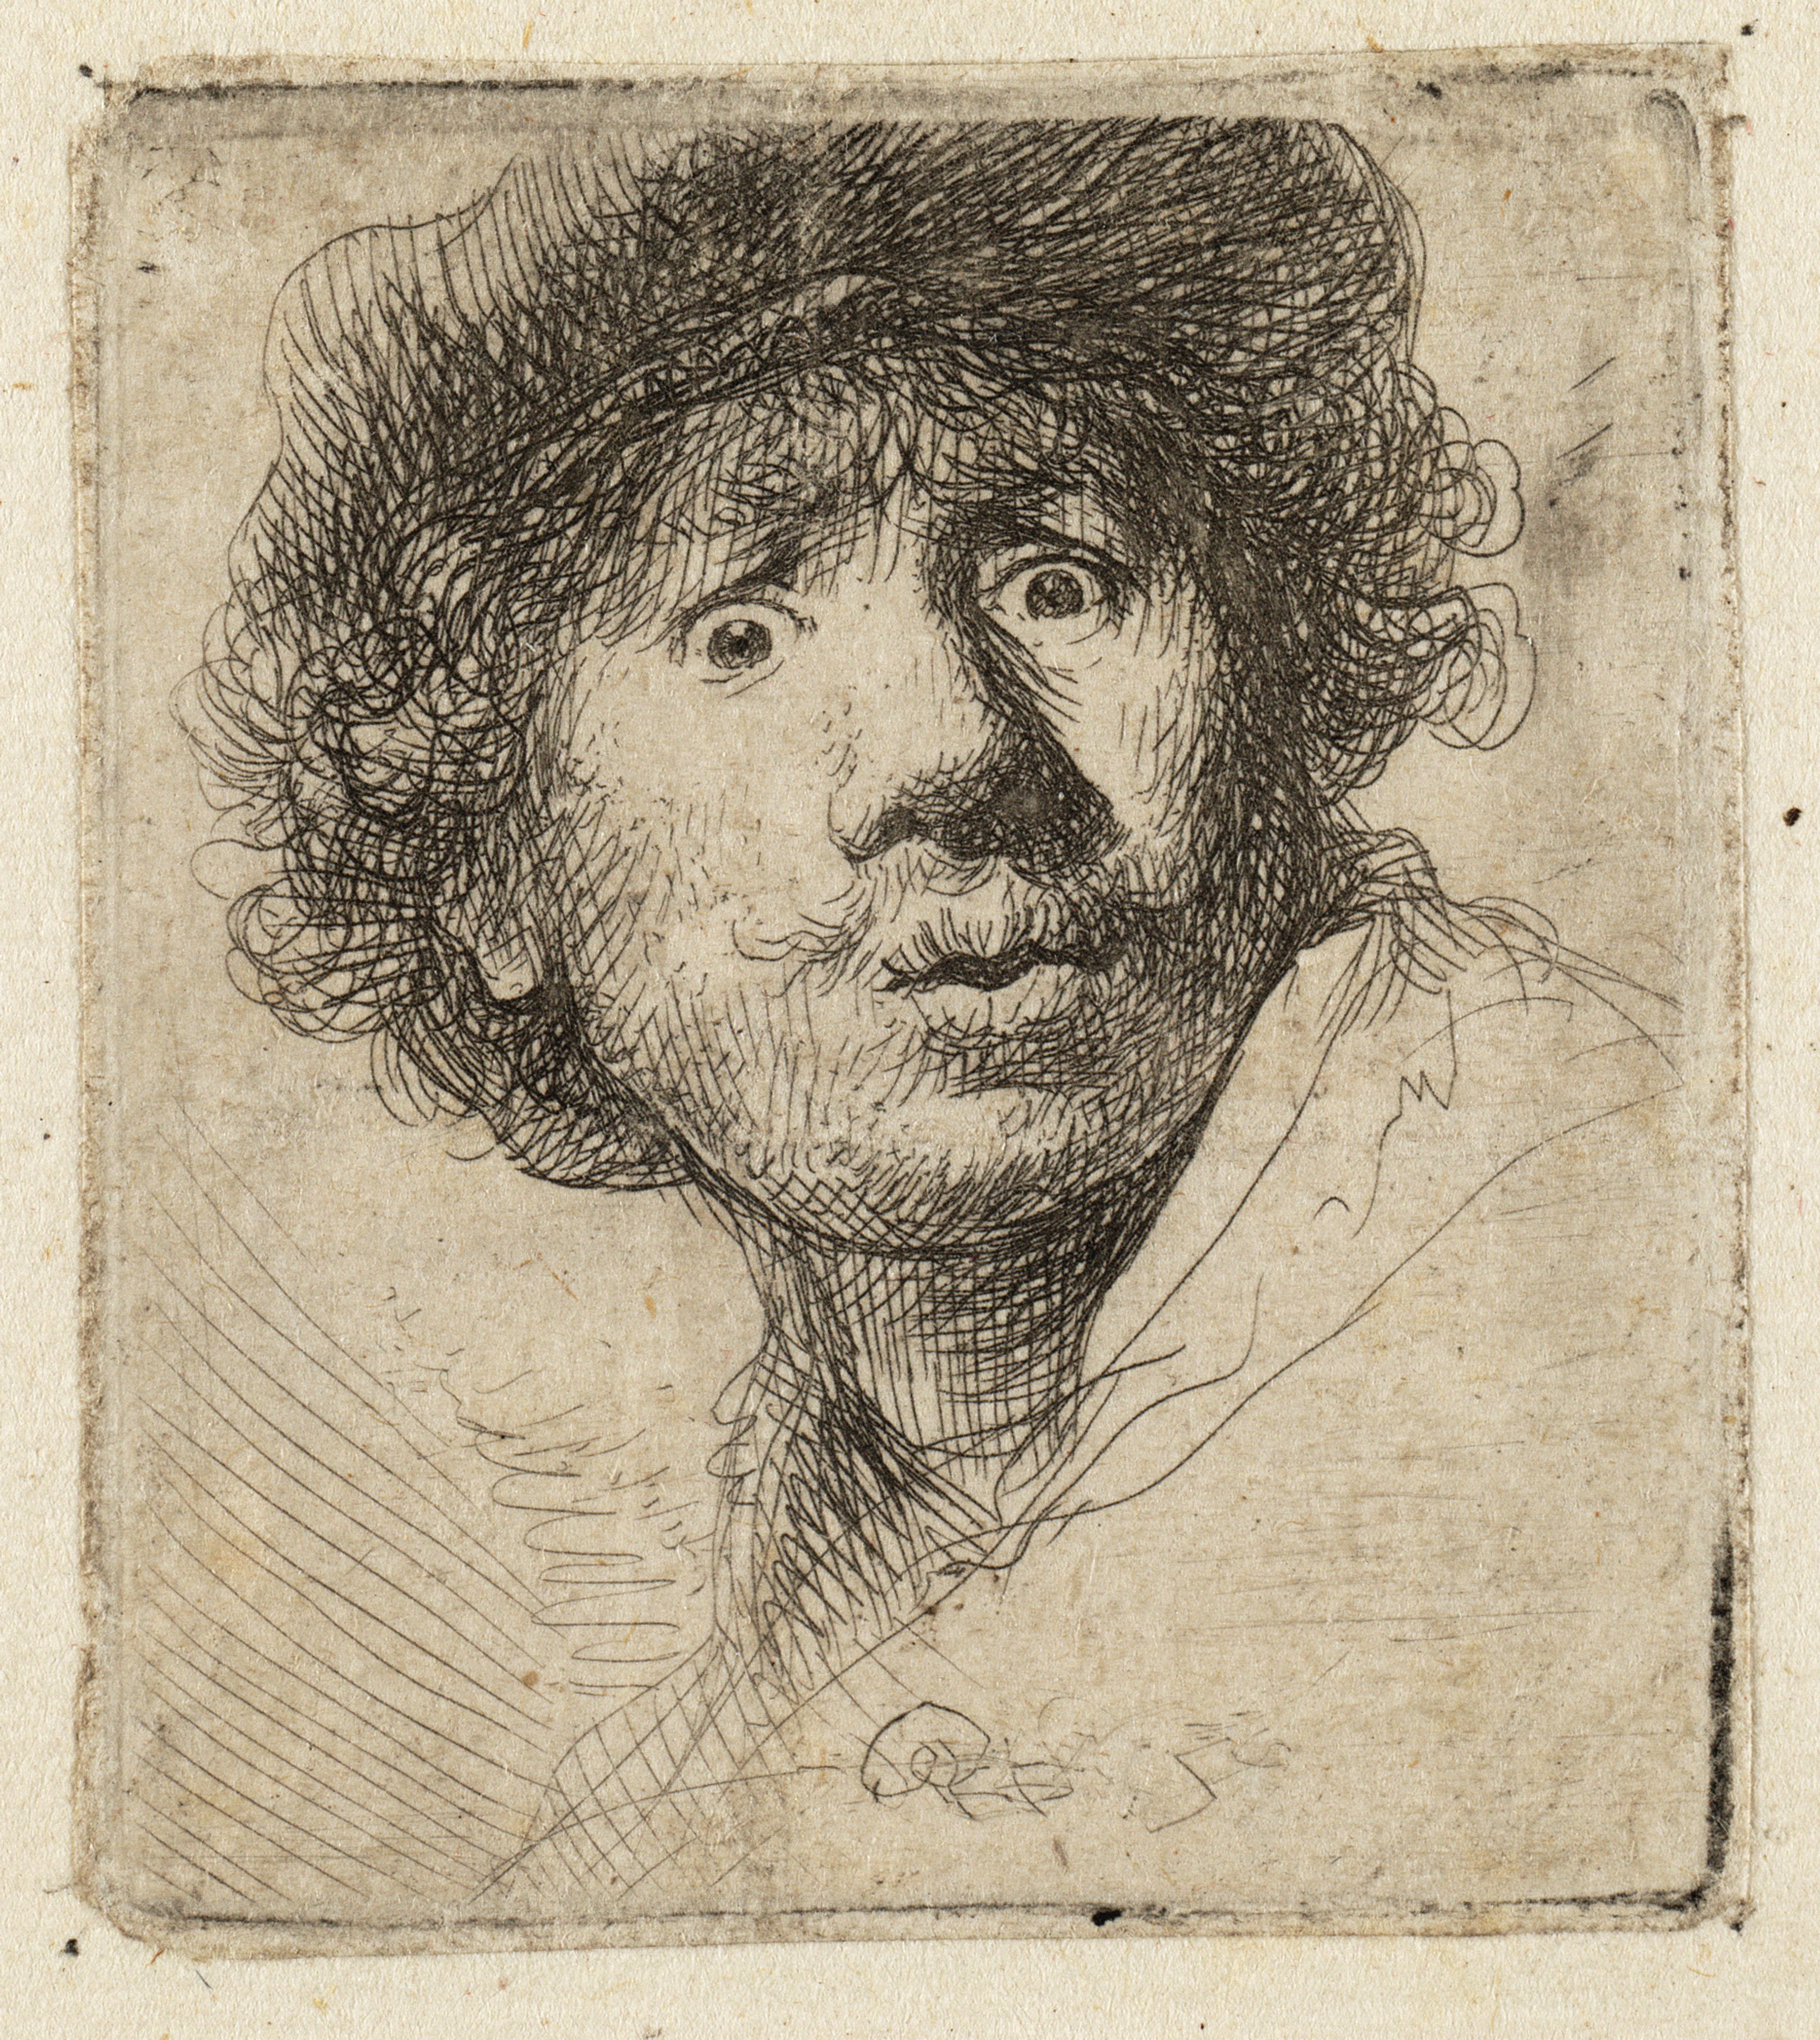 Rembrandt Harmensz. van Rijn, Zelfportret met baret en opengesperde ogen, 1630.